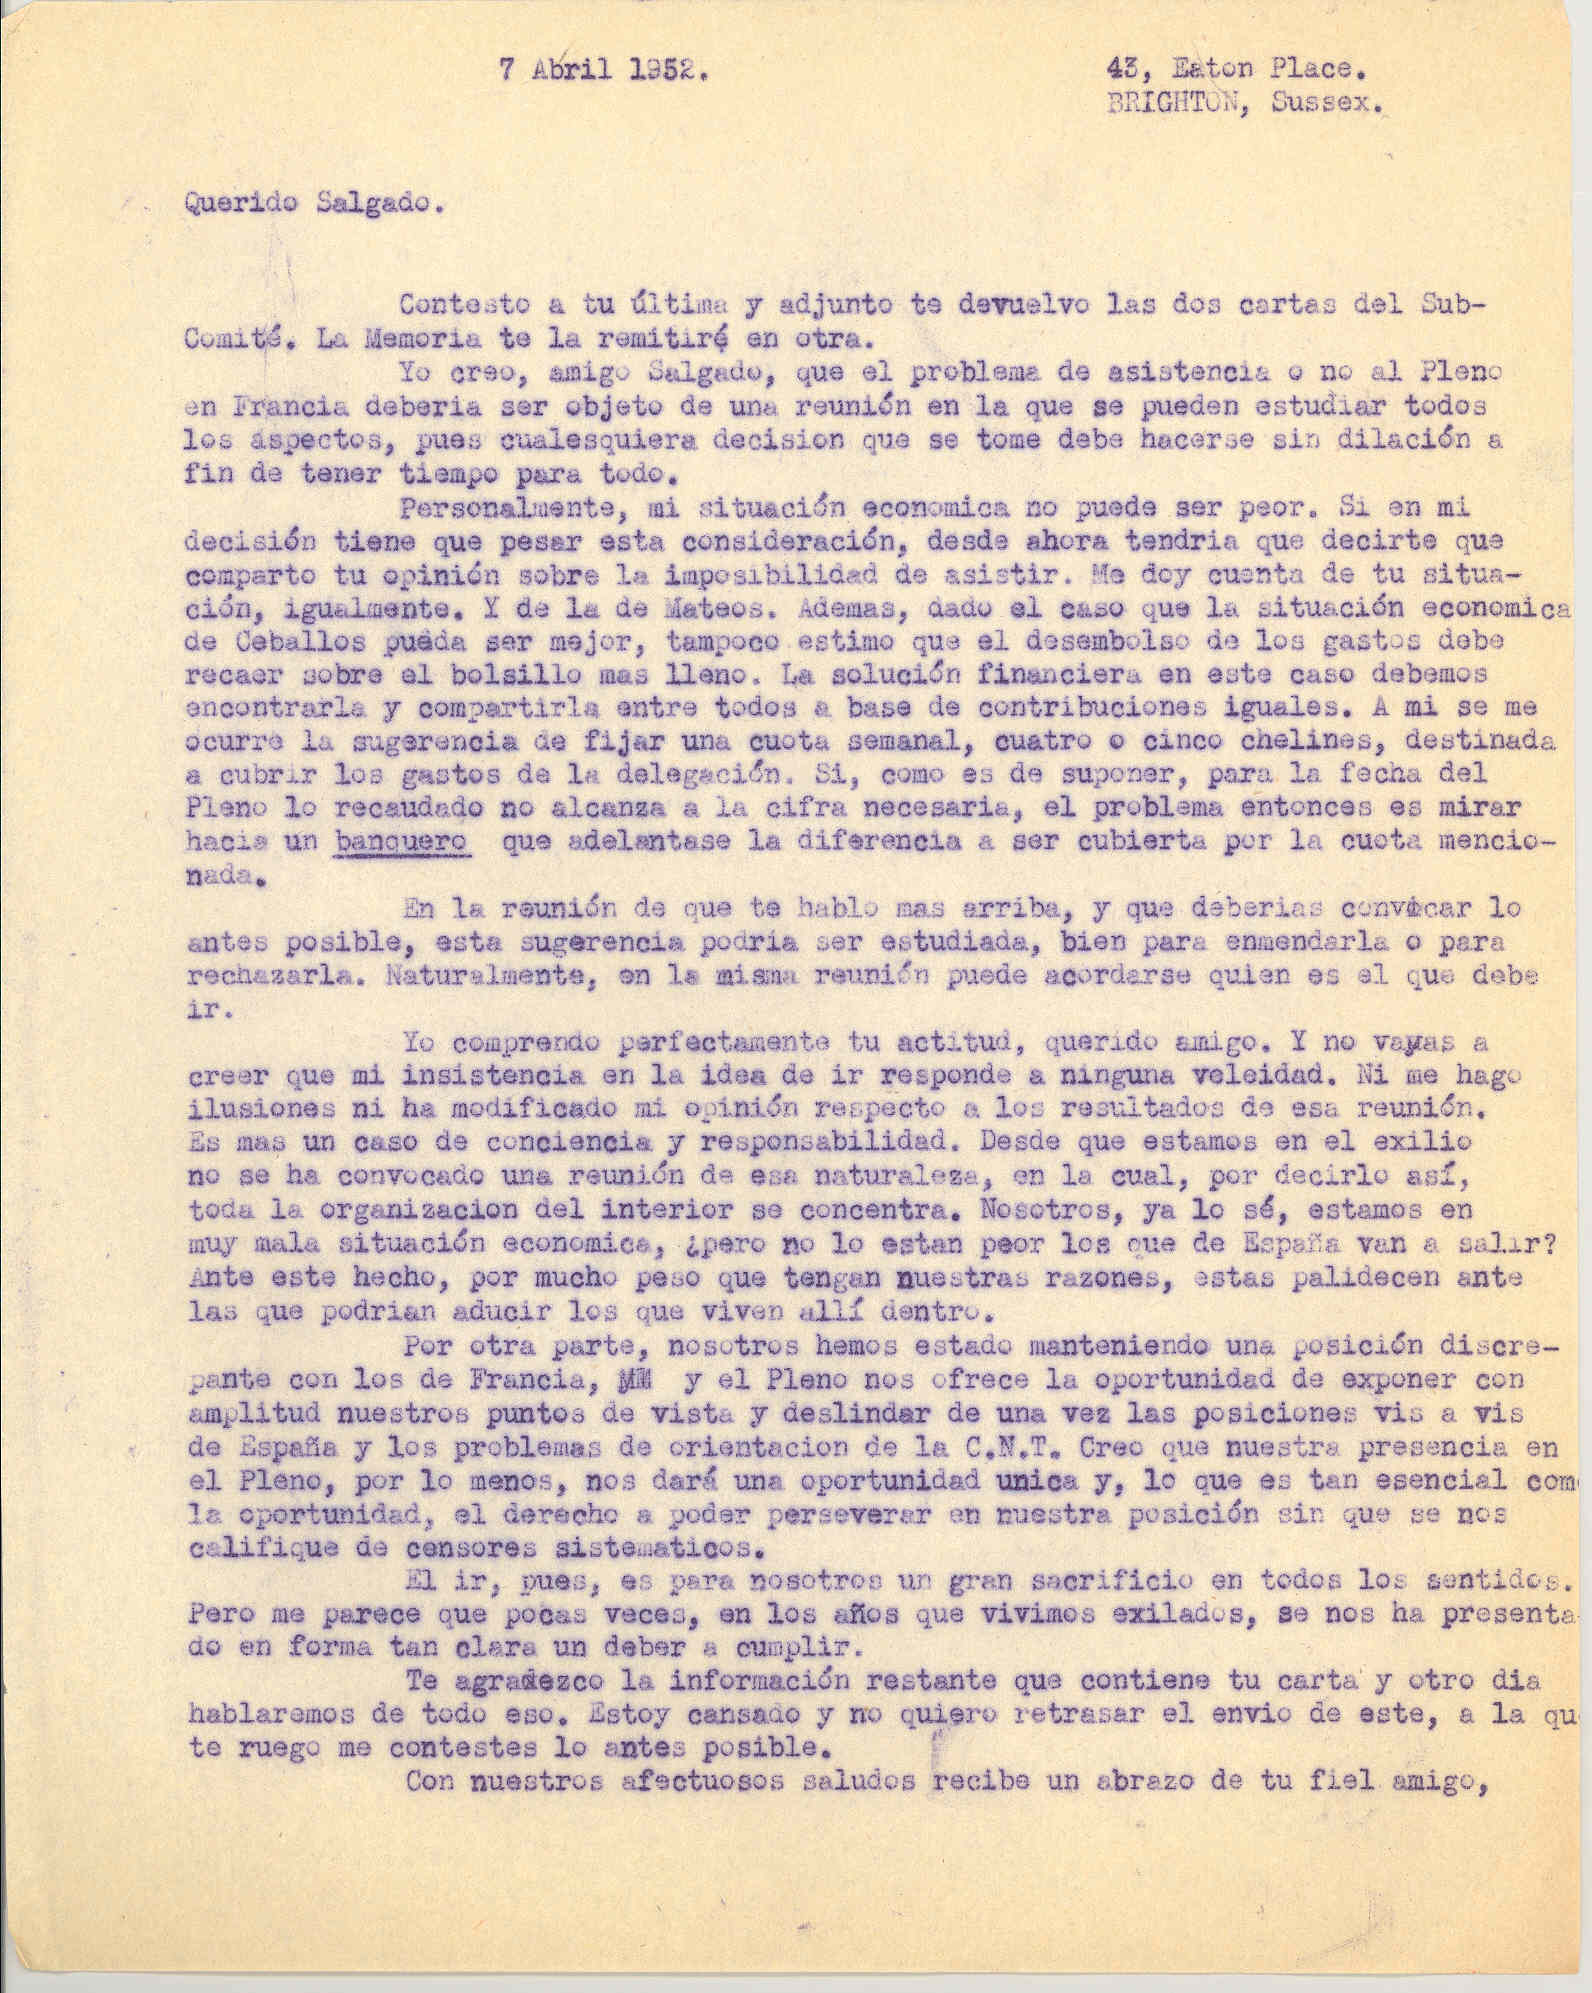 Carta a Manuel Salgado sobre las ventajas de asistir al Pleno de Francia para poder perseverar su posición en relación al problema español y su imposibilidad de asistir por motivos económicos